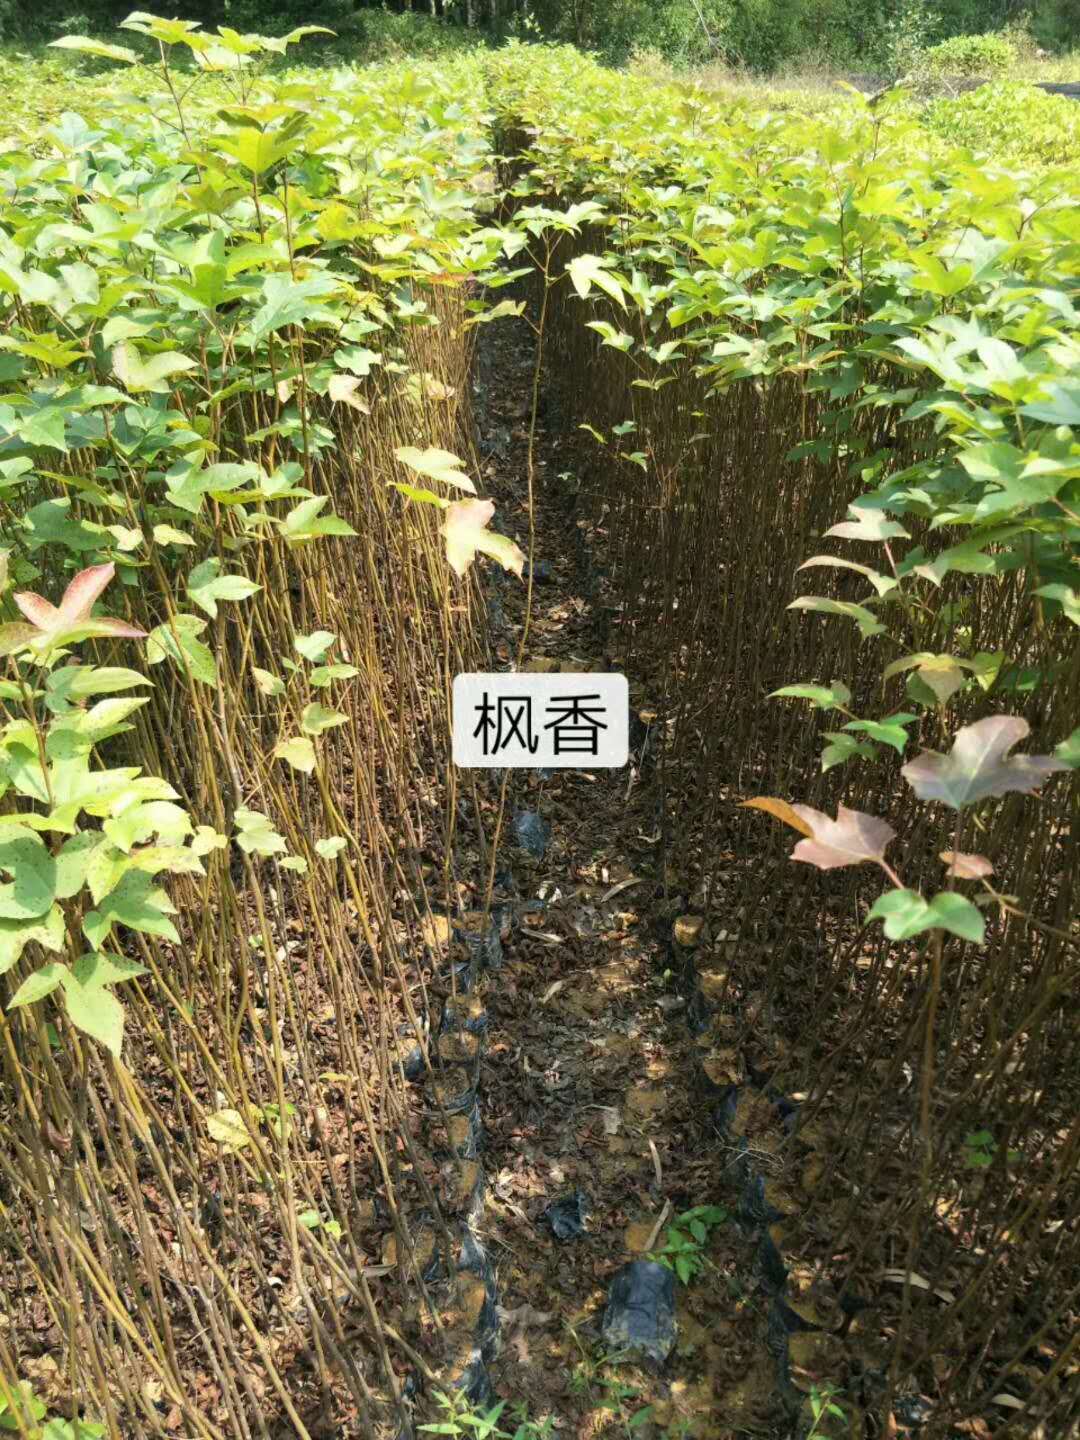 广东广州枫香批发直销 认准广州绿林苗圃有限公司